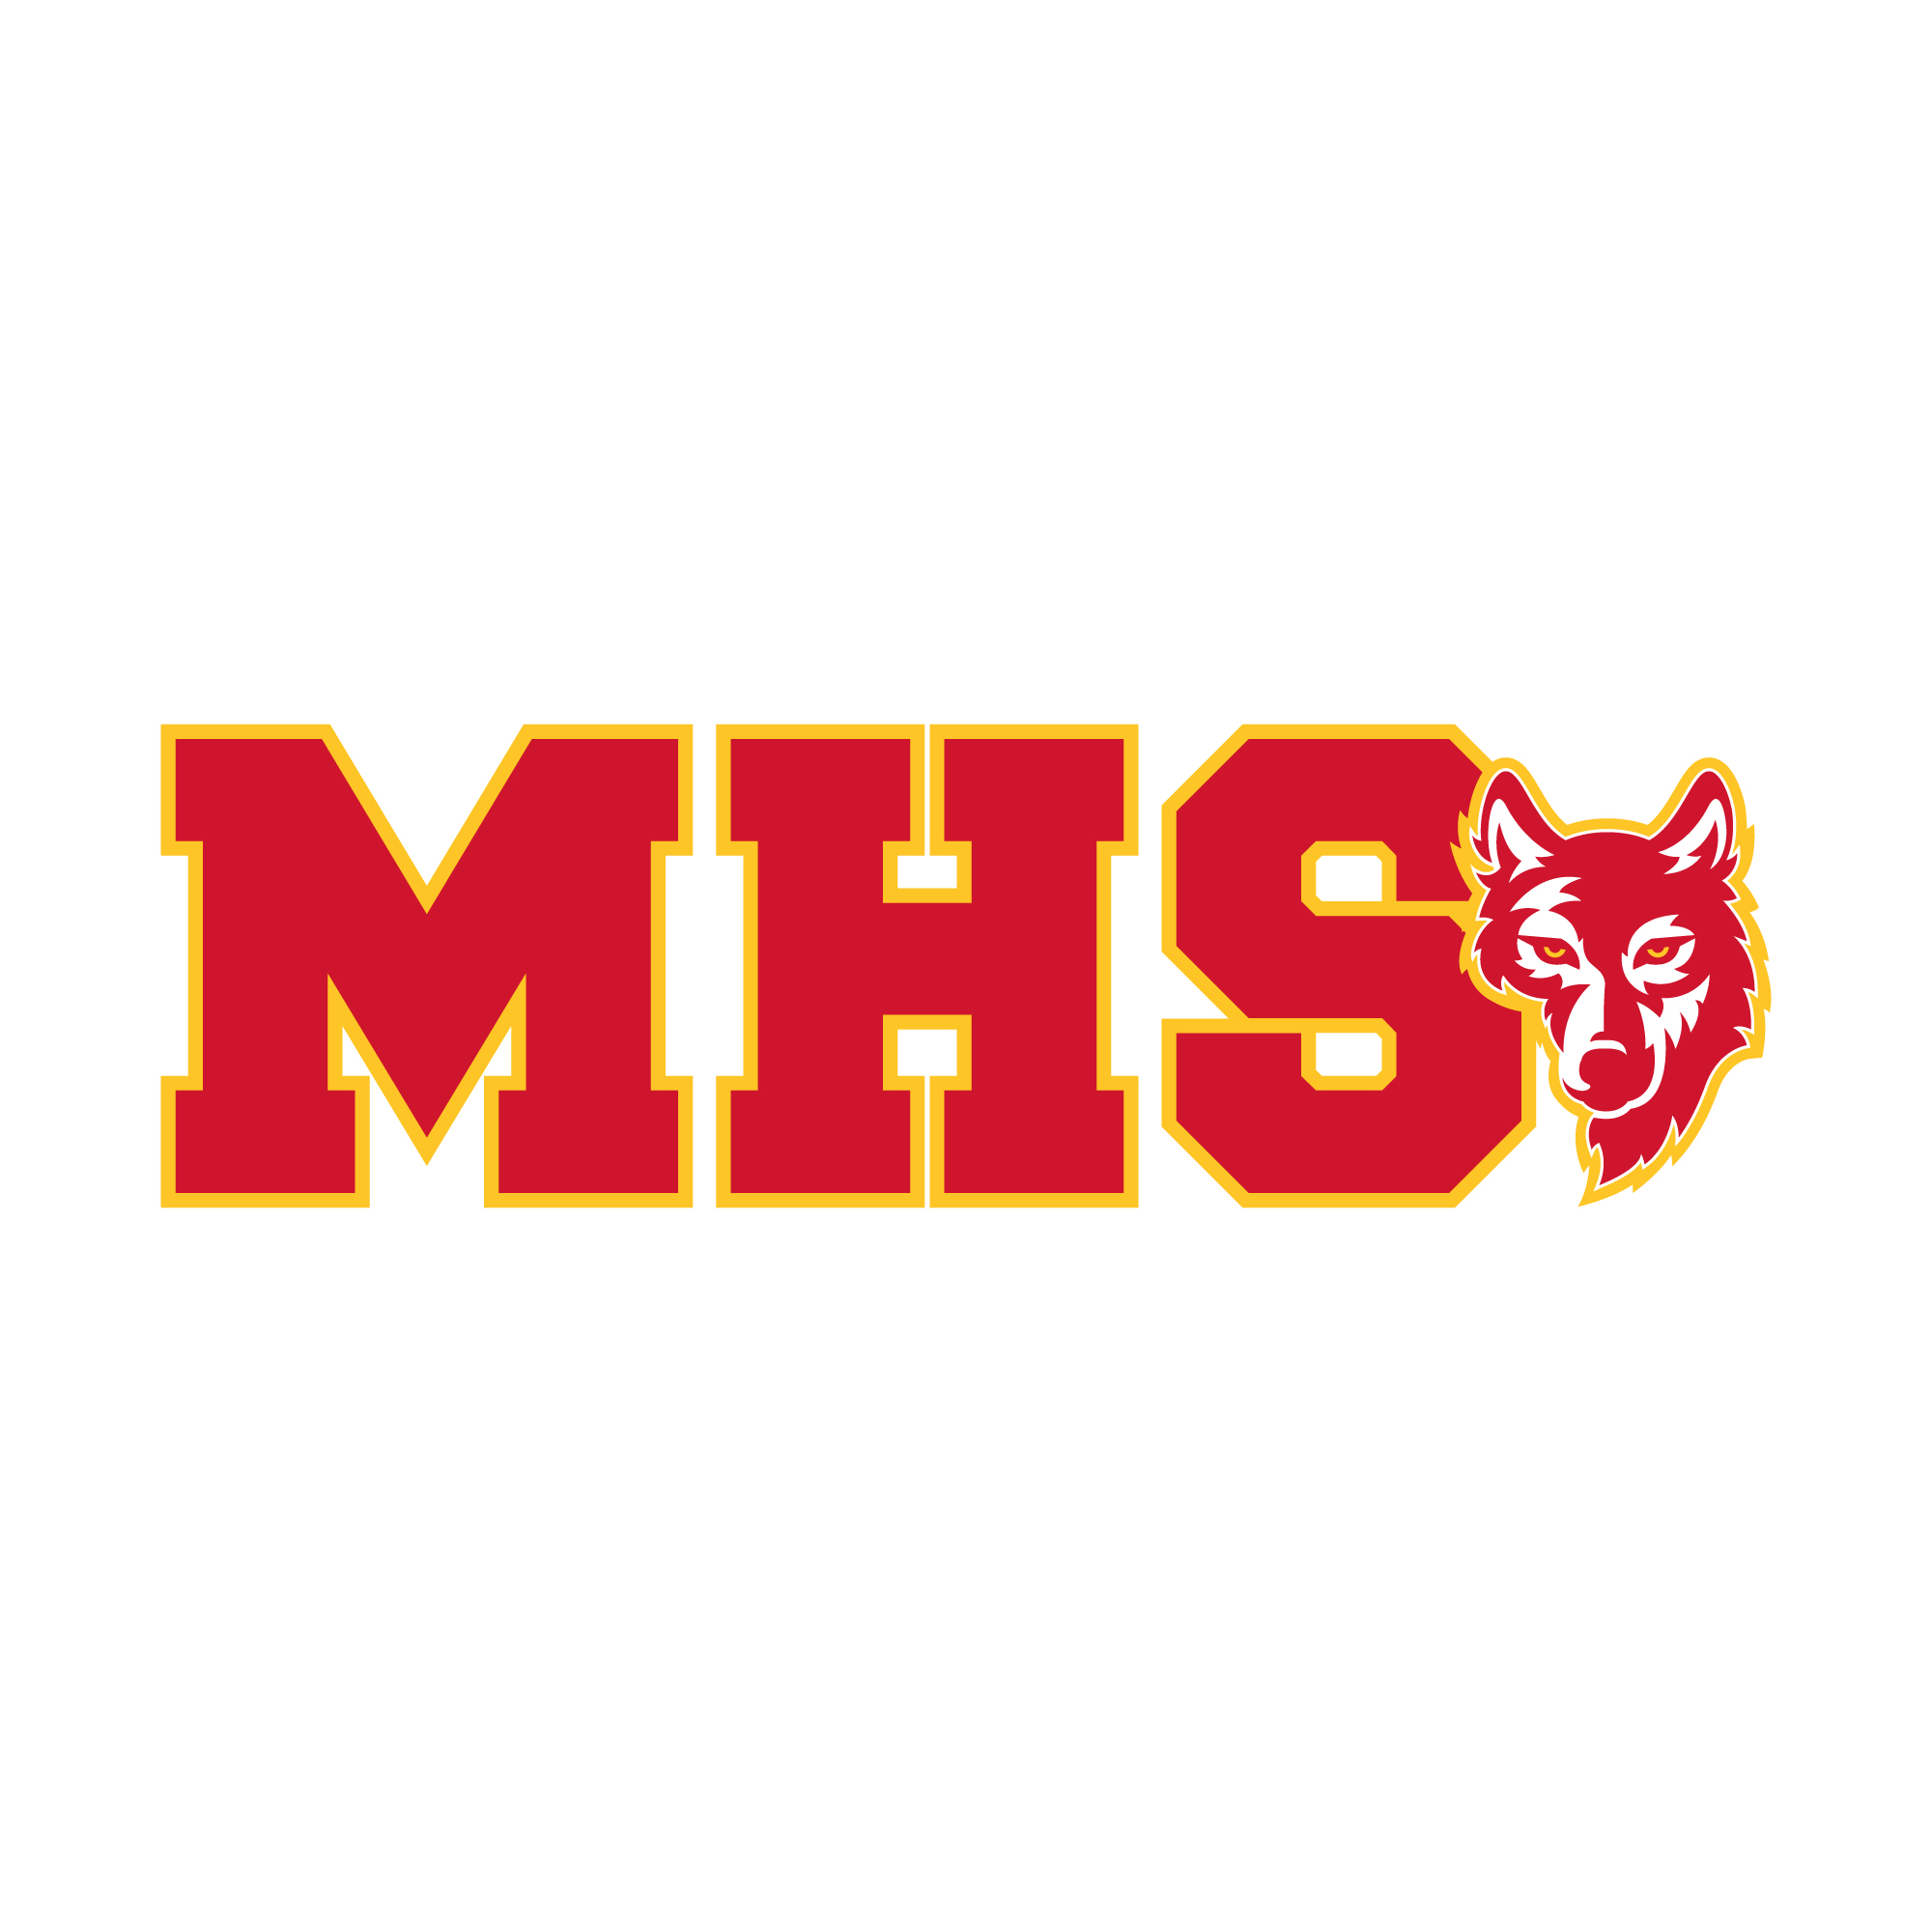 MHS logo